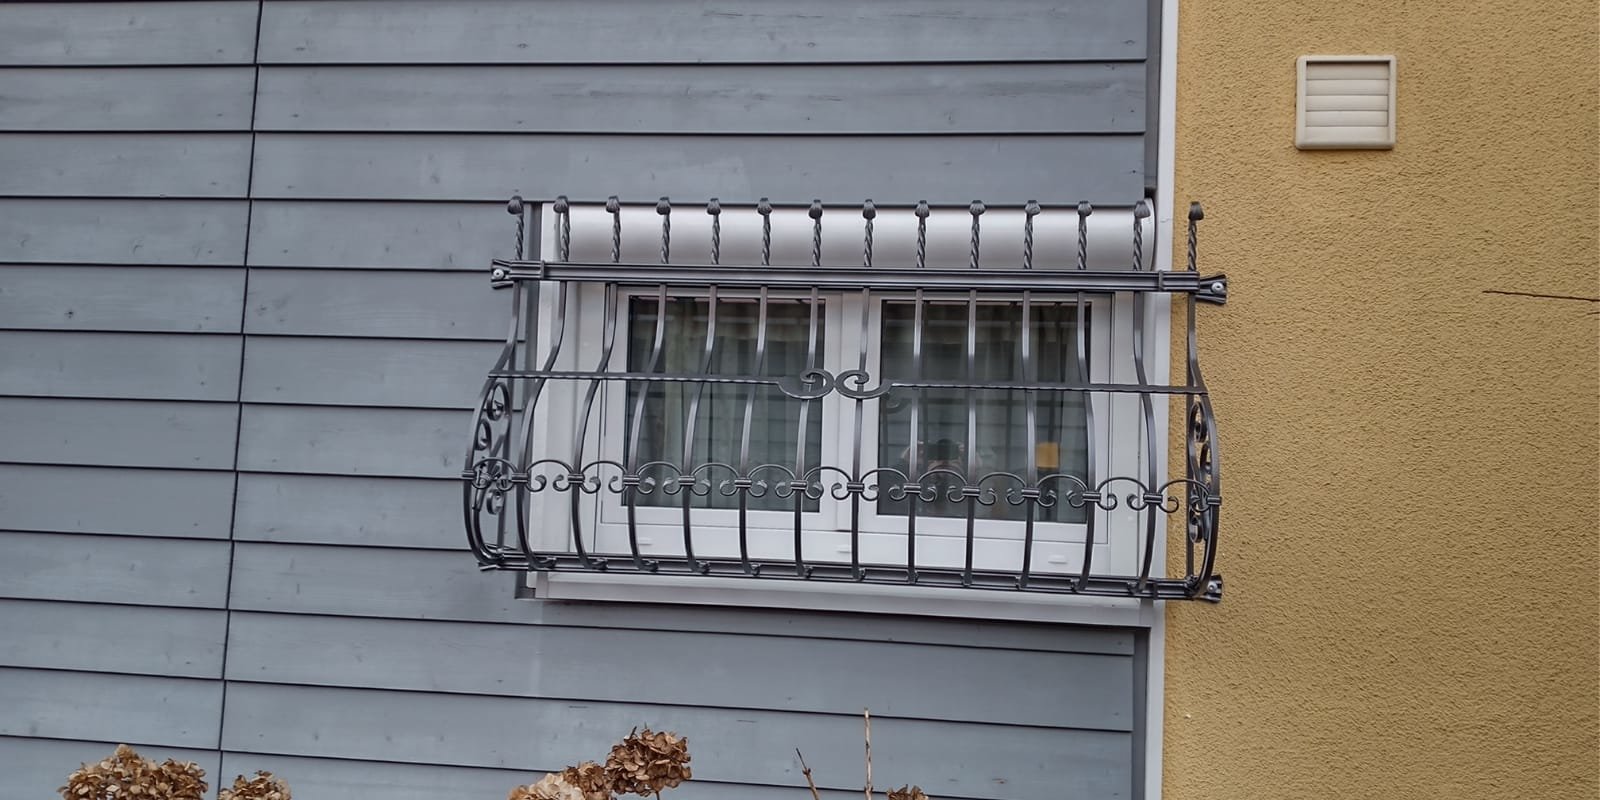 Doppel Kunststofffenster mit Gitter davor